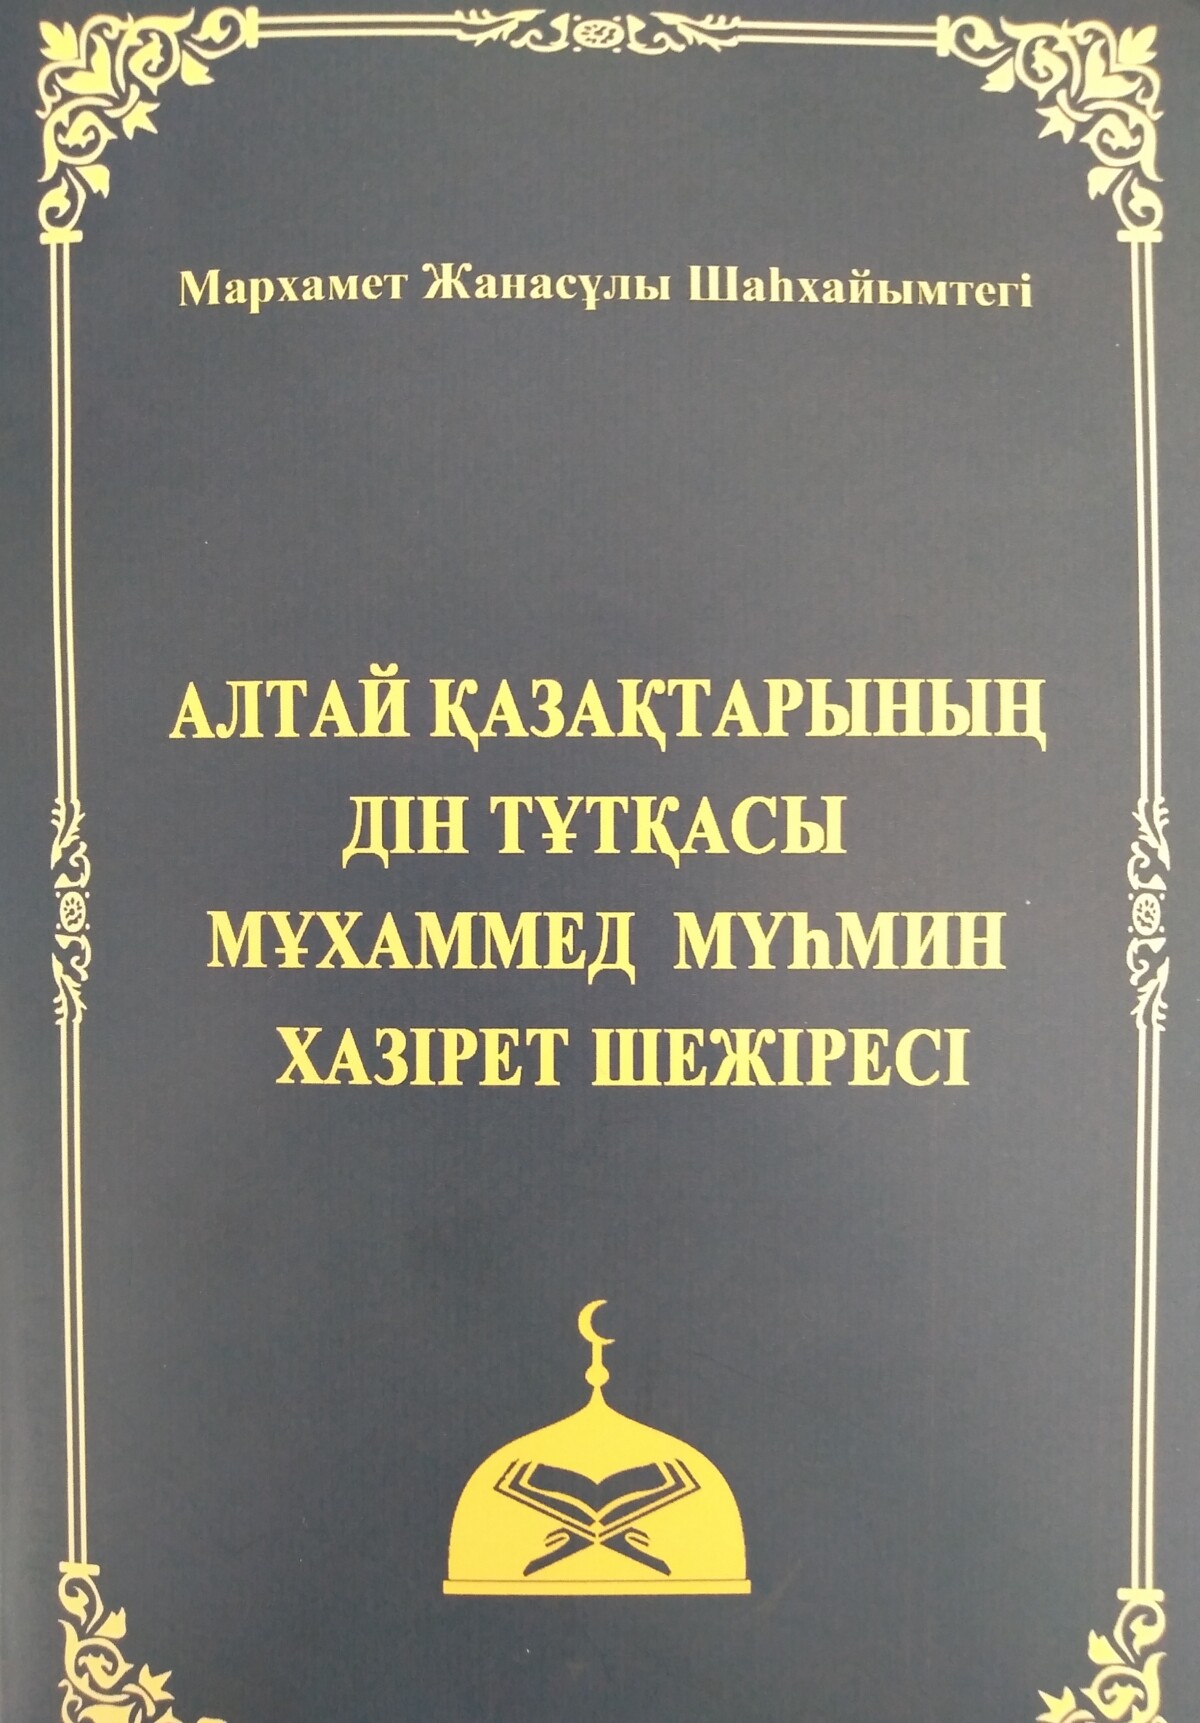 Алтай қазақтарынан шыққан алғашқы дін қайраткері - e-history.kz